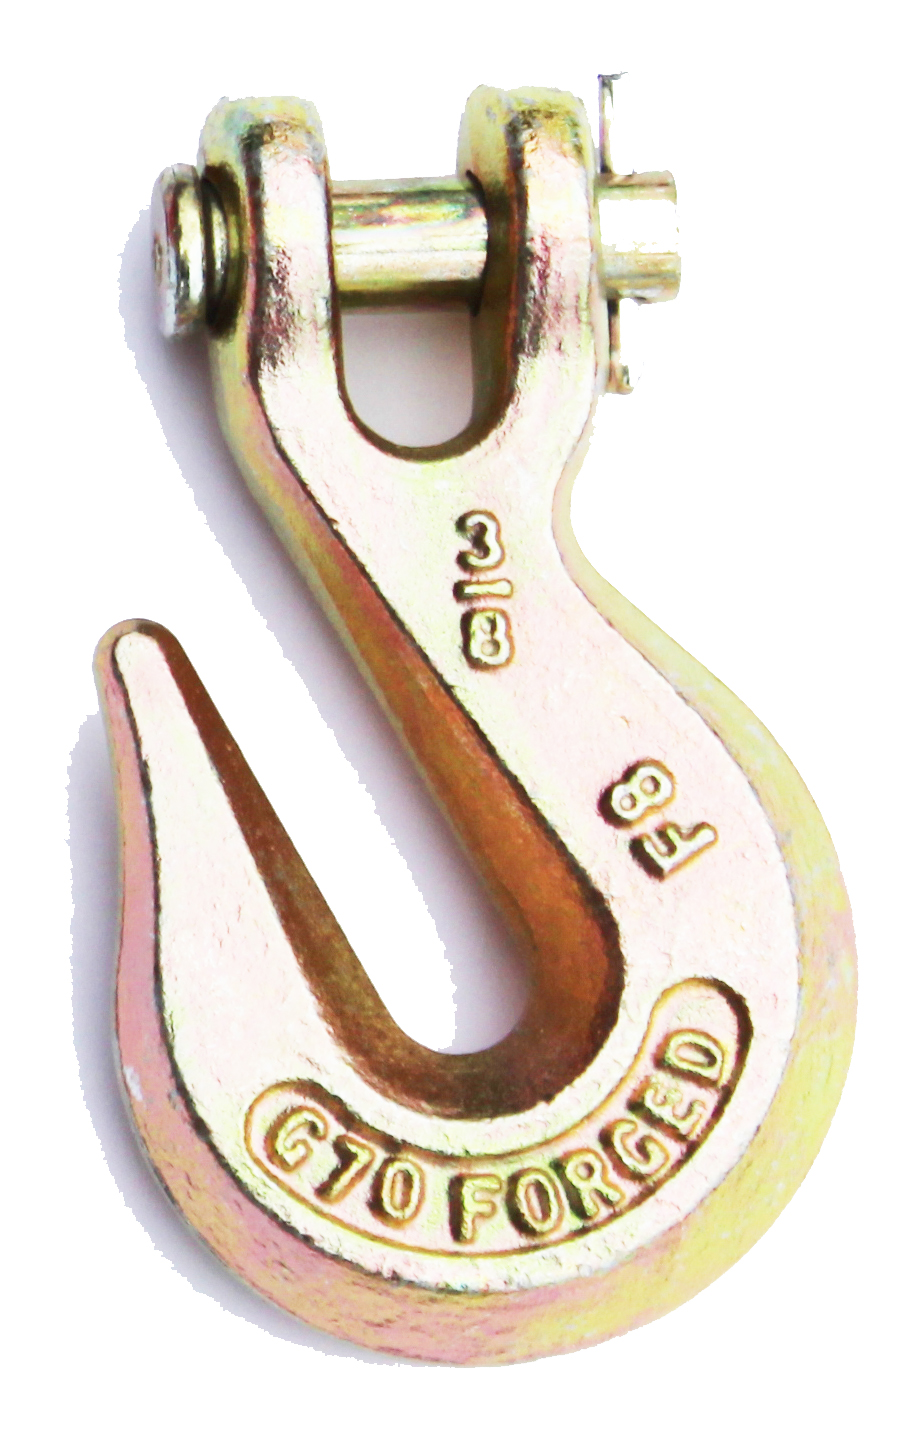 Eye Grab Hook Towing Hook 5/16'' Grade 70 | Manufacturer Express